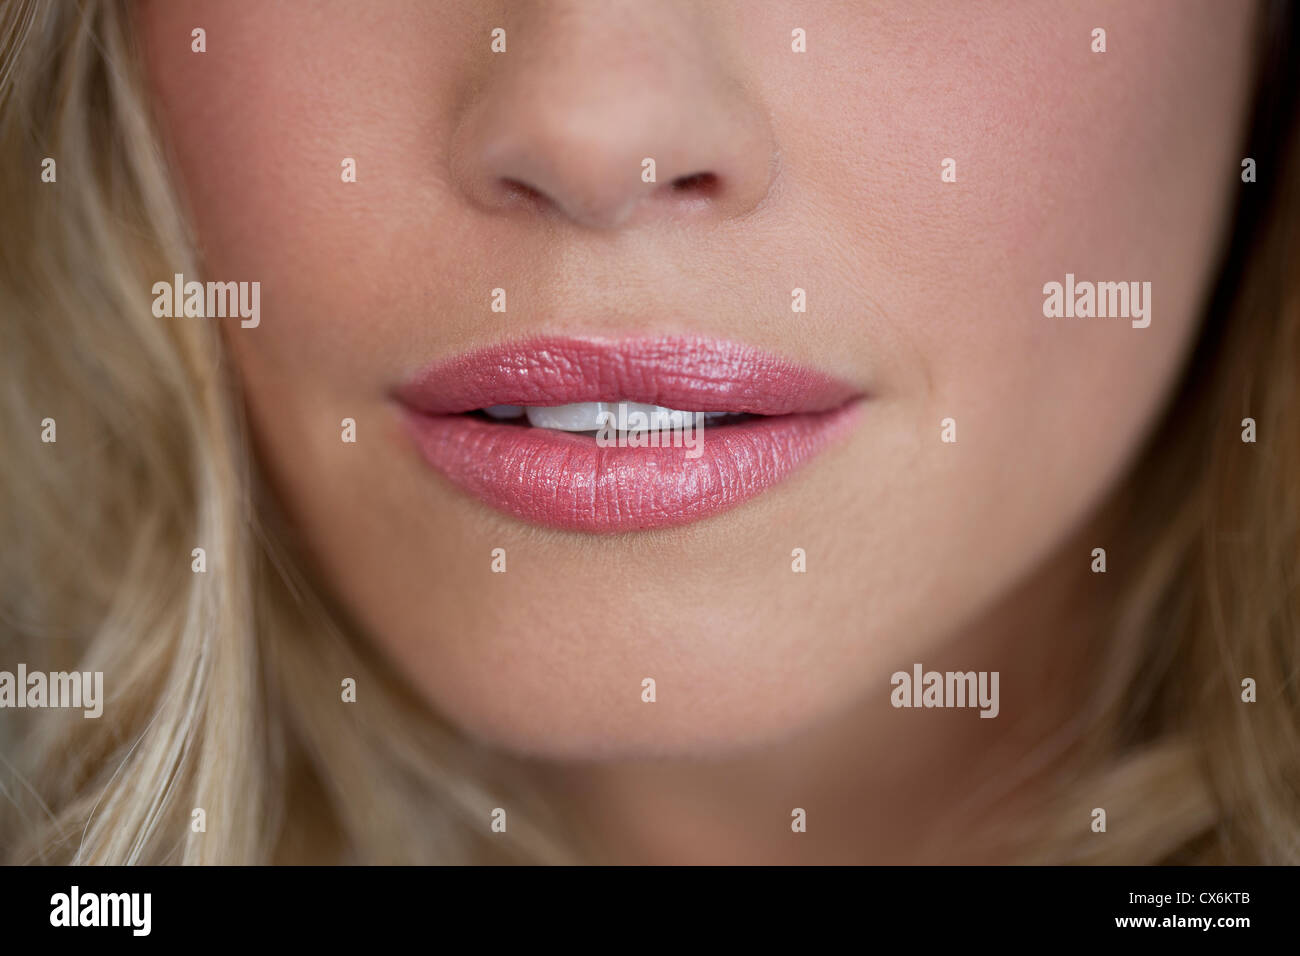 Eine junge Womans Mund Nahaufnahme Lippen leicht geöffnet zeigt Zähne, Stockfoto